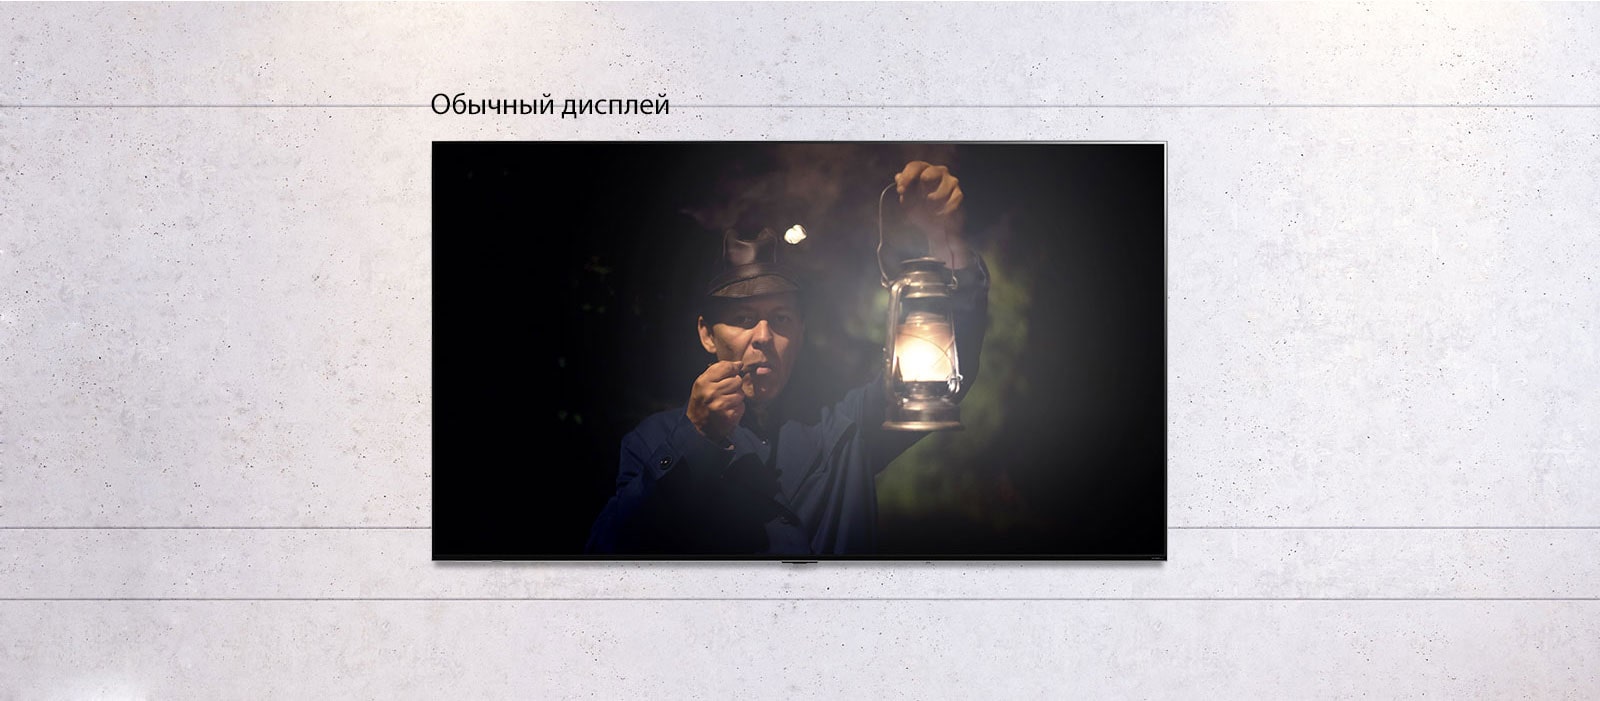 Прокручиваемое изображение закрепленного на стене телевизора, на экране которого изображен мужчина с фонарем в темноте. Изображение чередуется между телевизором обычного размера и телевизором LG QNED MiniLED с большим экраном.